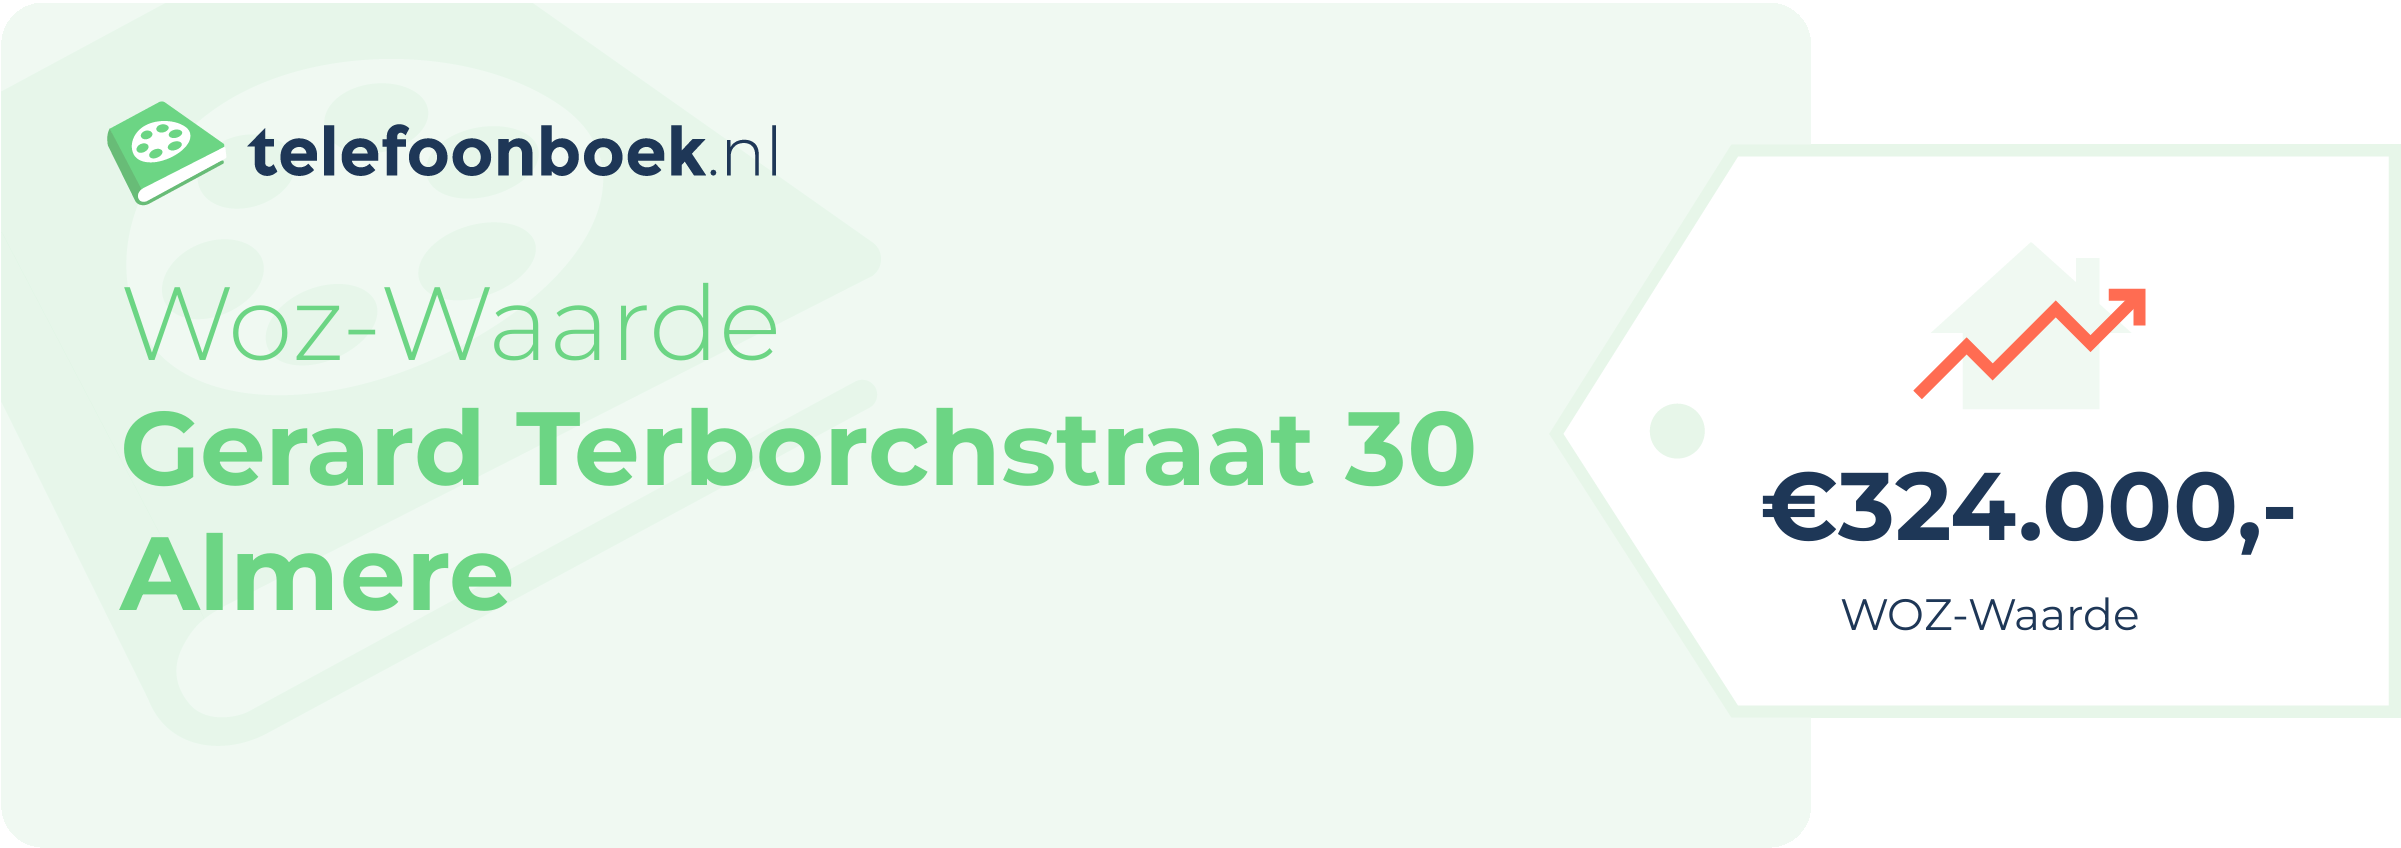 WOZ-waarde Gerard Terborchstraat 30 Almere